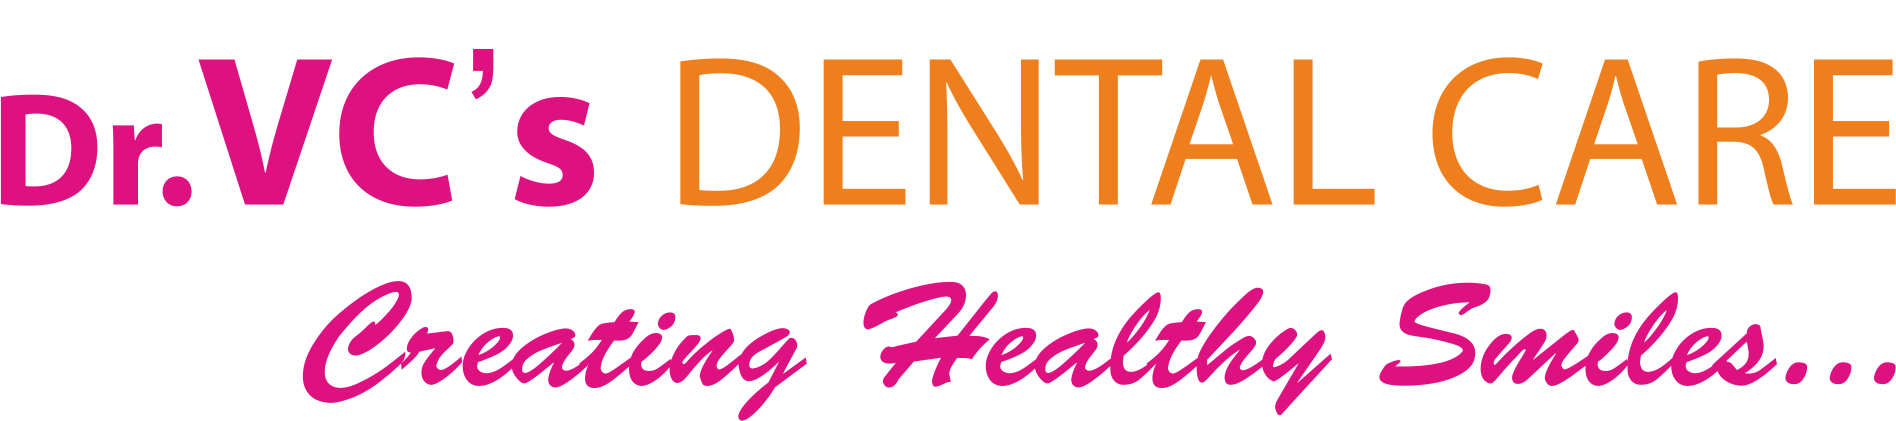 Dr VCs Dental Care|Dentists|Medical Services